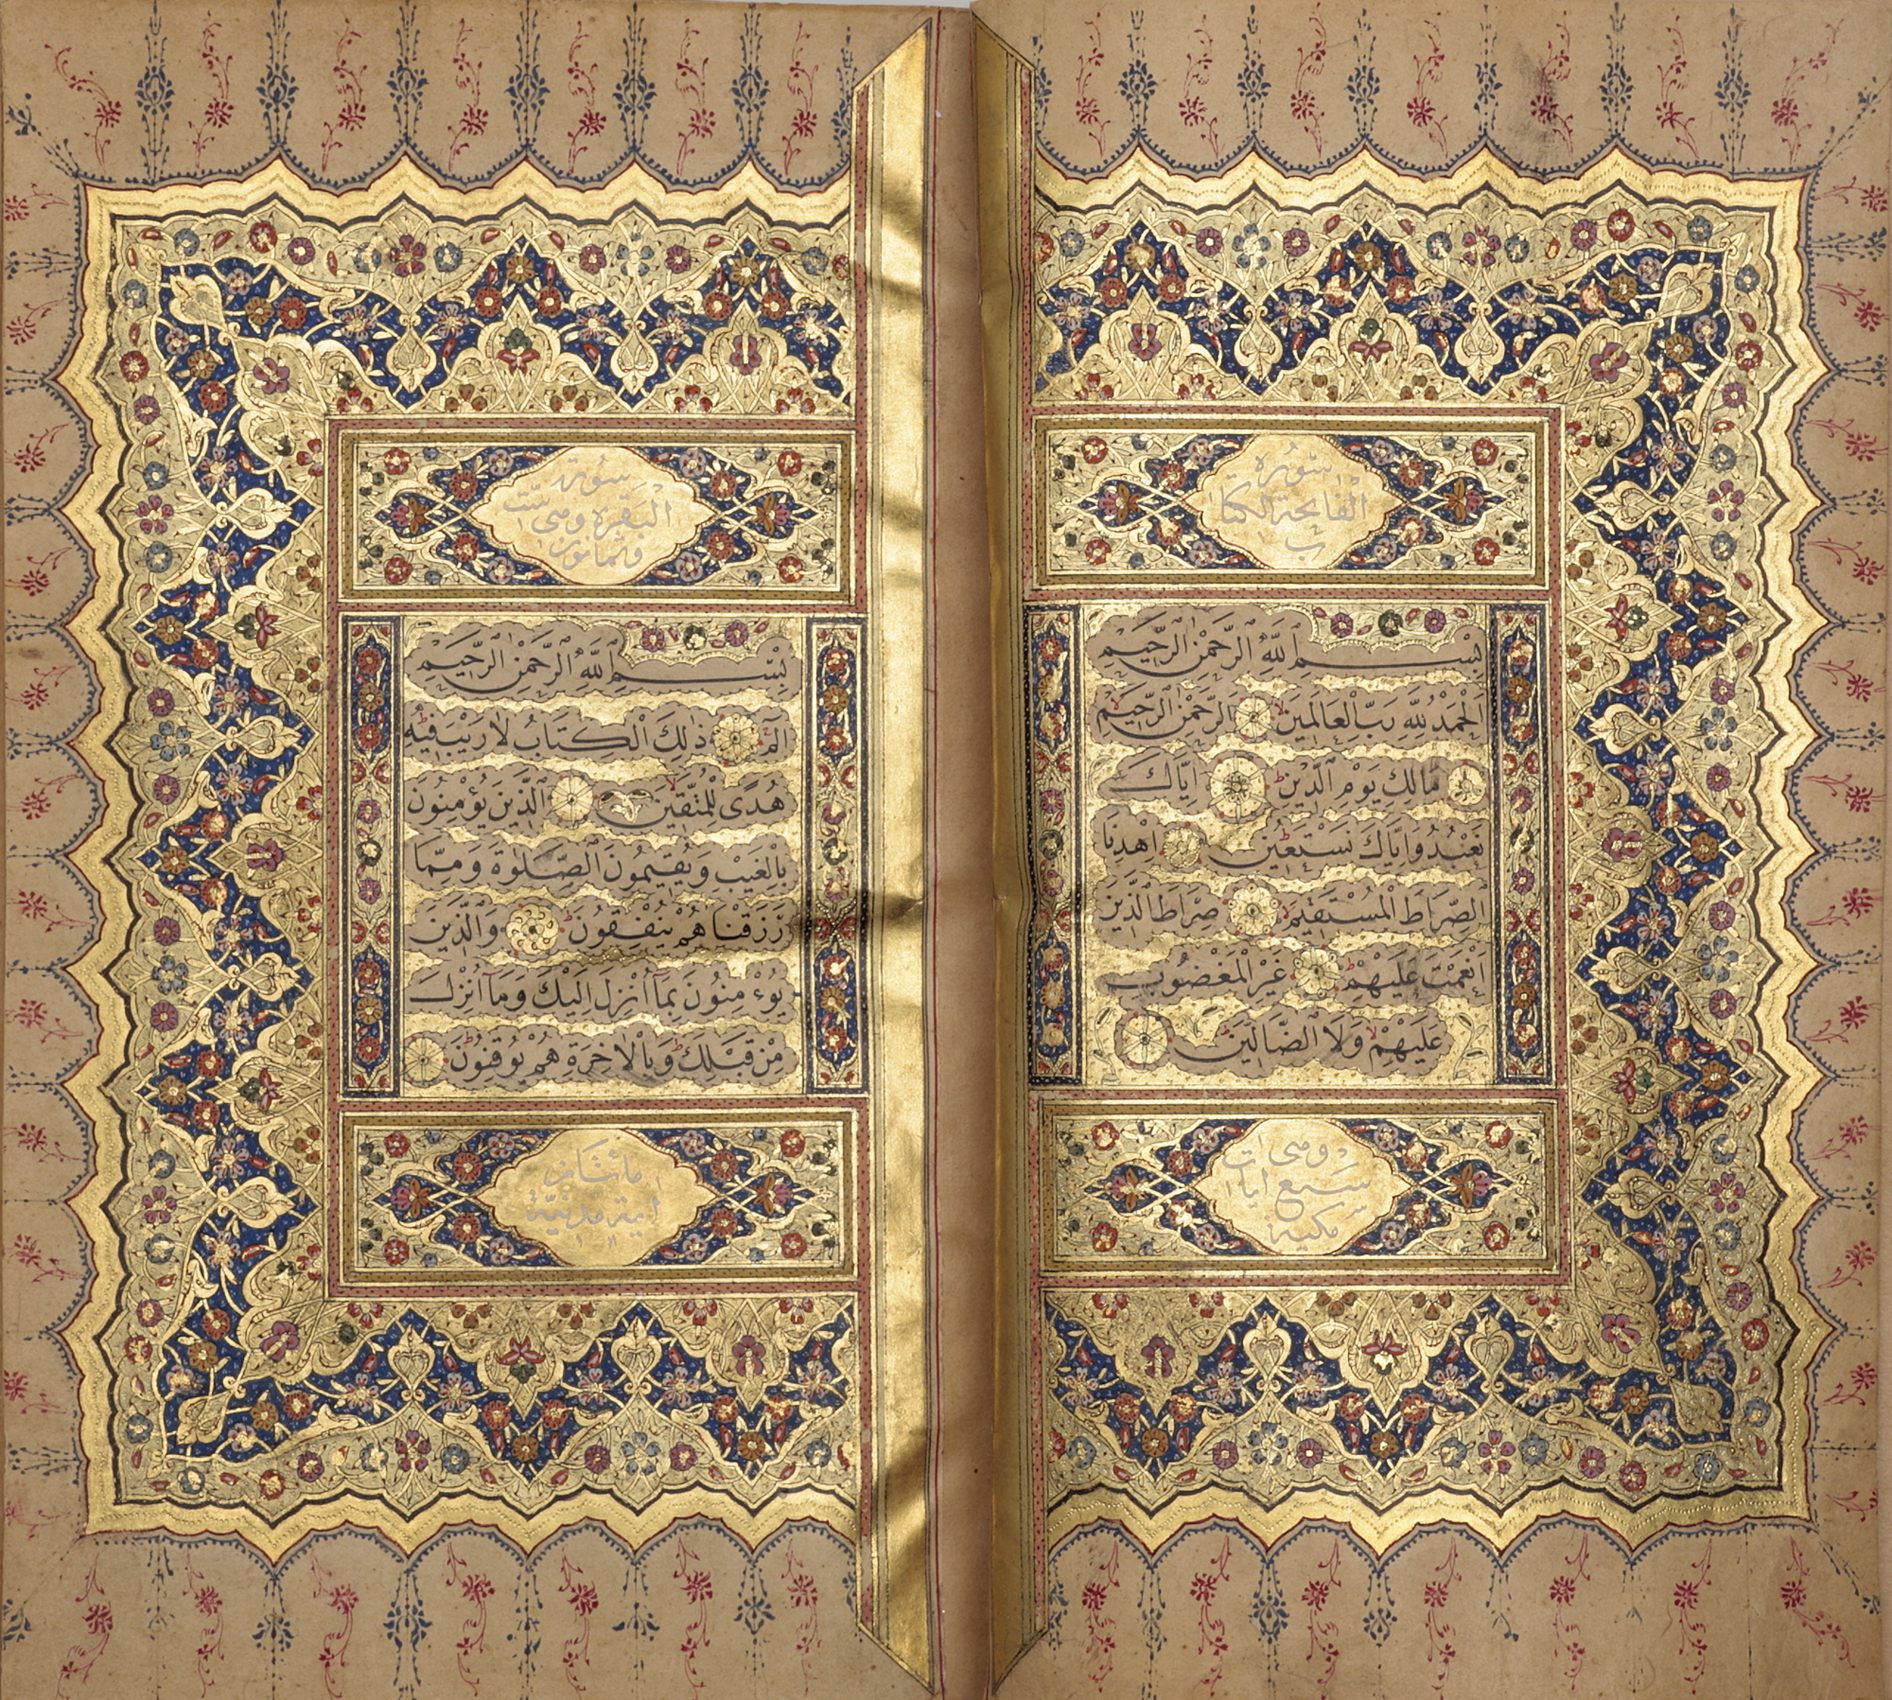 Khalili Collection Islamic Art Qur 1076 1B 2A